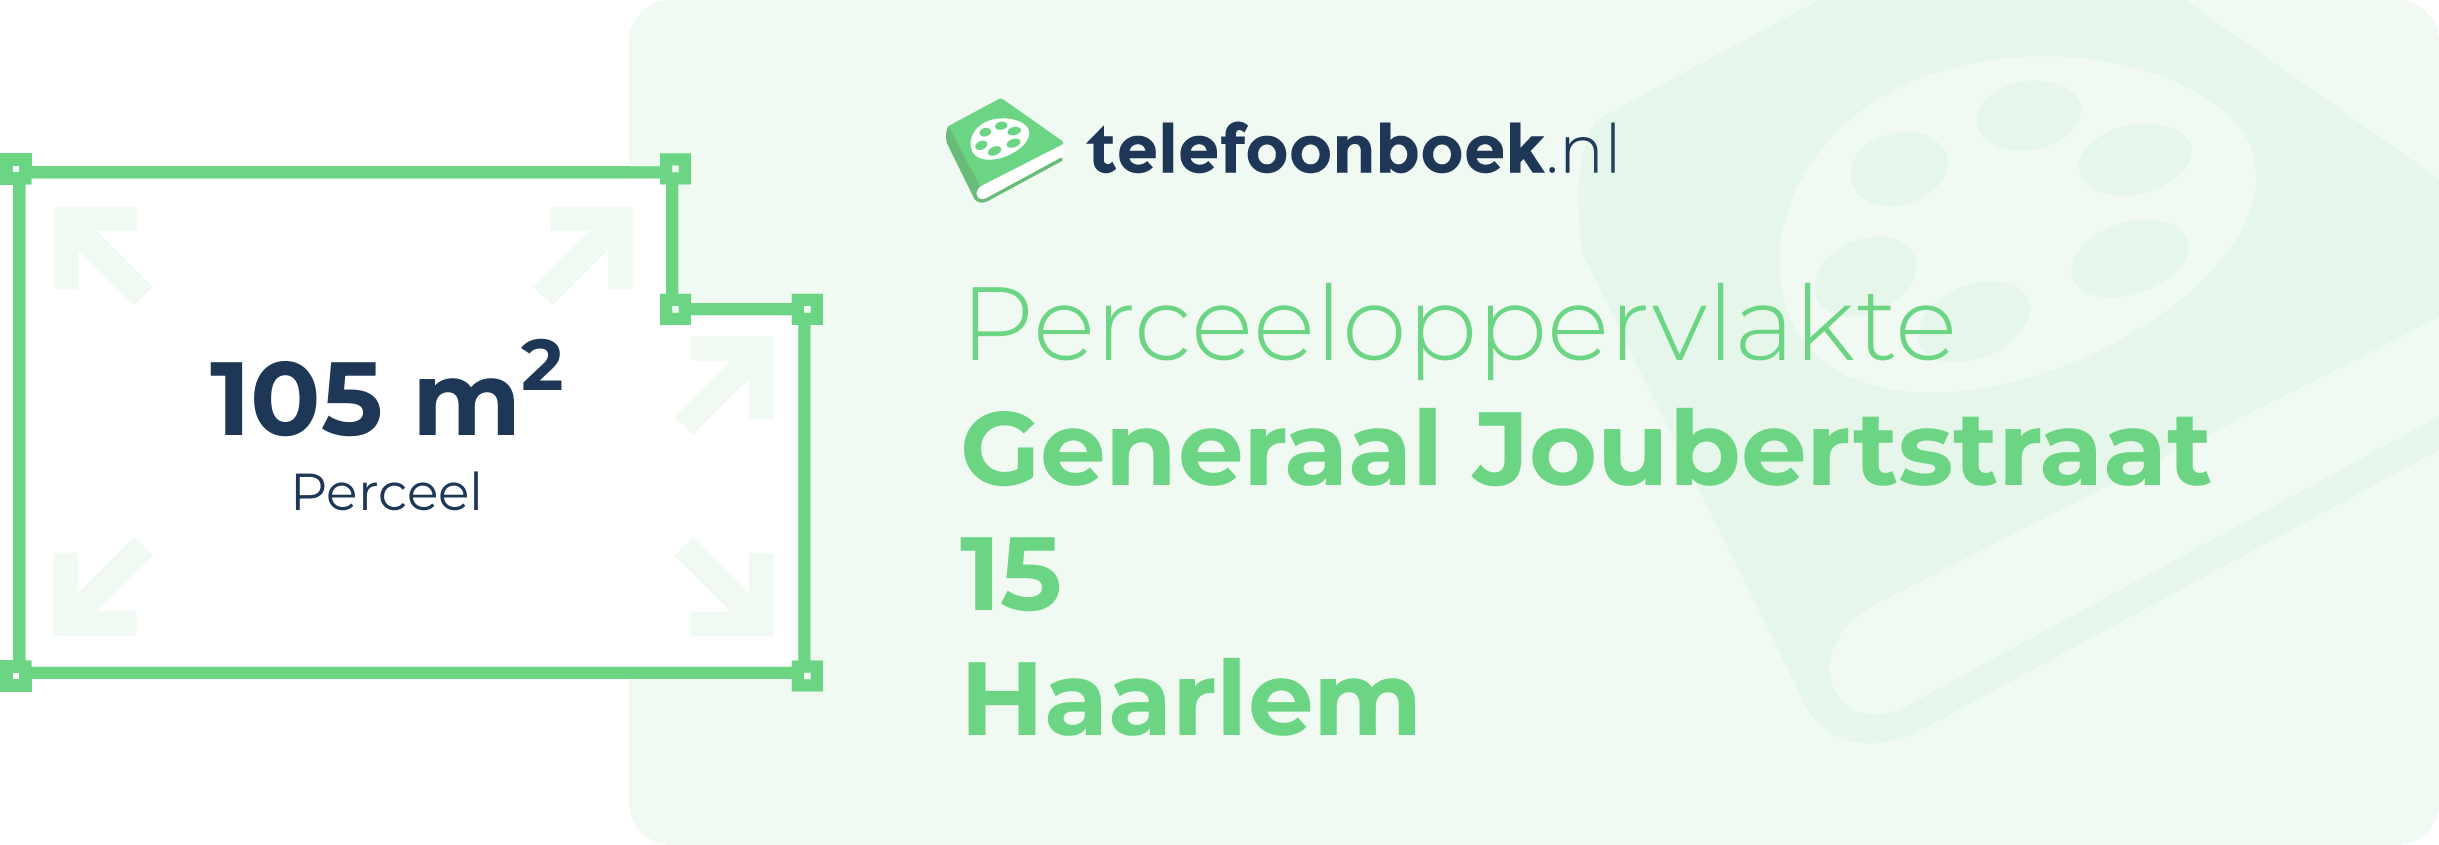 Perceeloppervlakte Generaal Joubertstraat 15 Haarlem